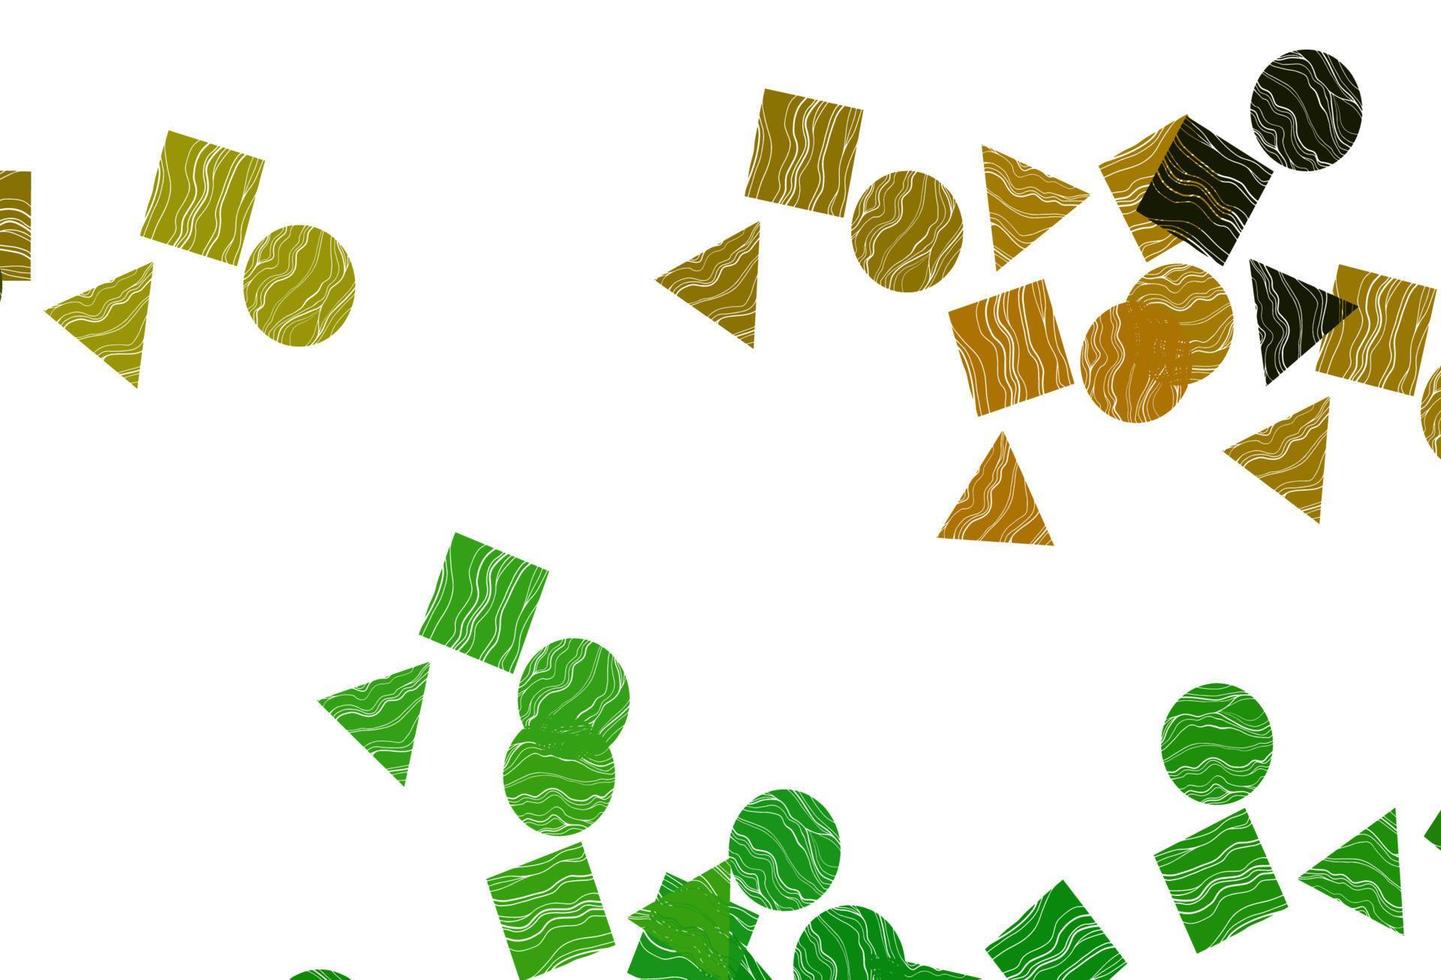 modelo de vetor verde e amarelo claro com cristais, círculos, quadrados.